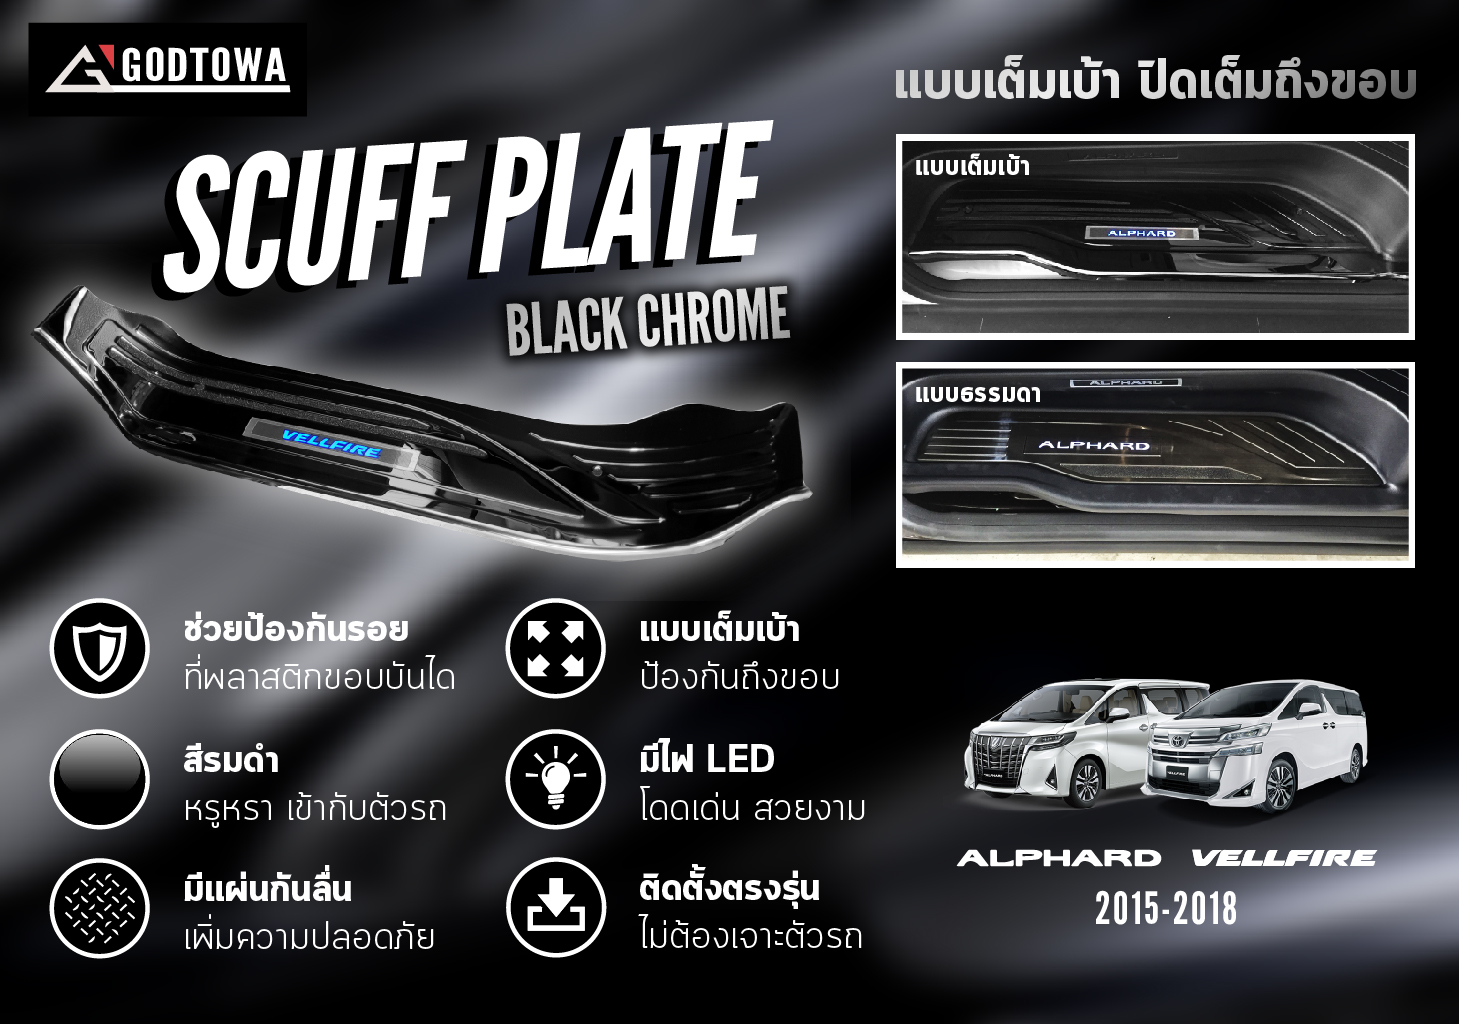 สคัพเพลทแบบเต็มเบ้าตรงรุ่น สำหรับรถยนต์ ALPHARD/VELLFIRE 30 รุ่นปี 2015-2021 สี BLACK CHROME (สีรมดำ) scuffplate SCUFF PLATE สคับเพลส สคับเพลท สคัพเพลส